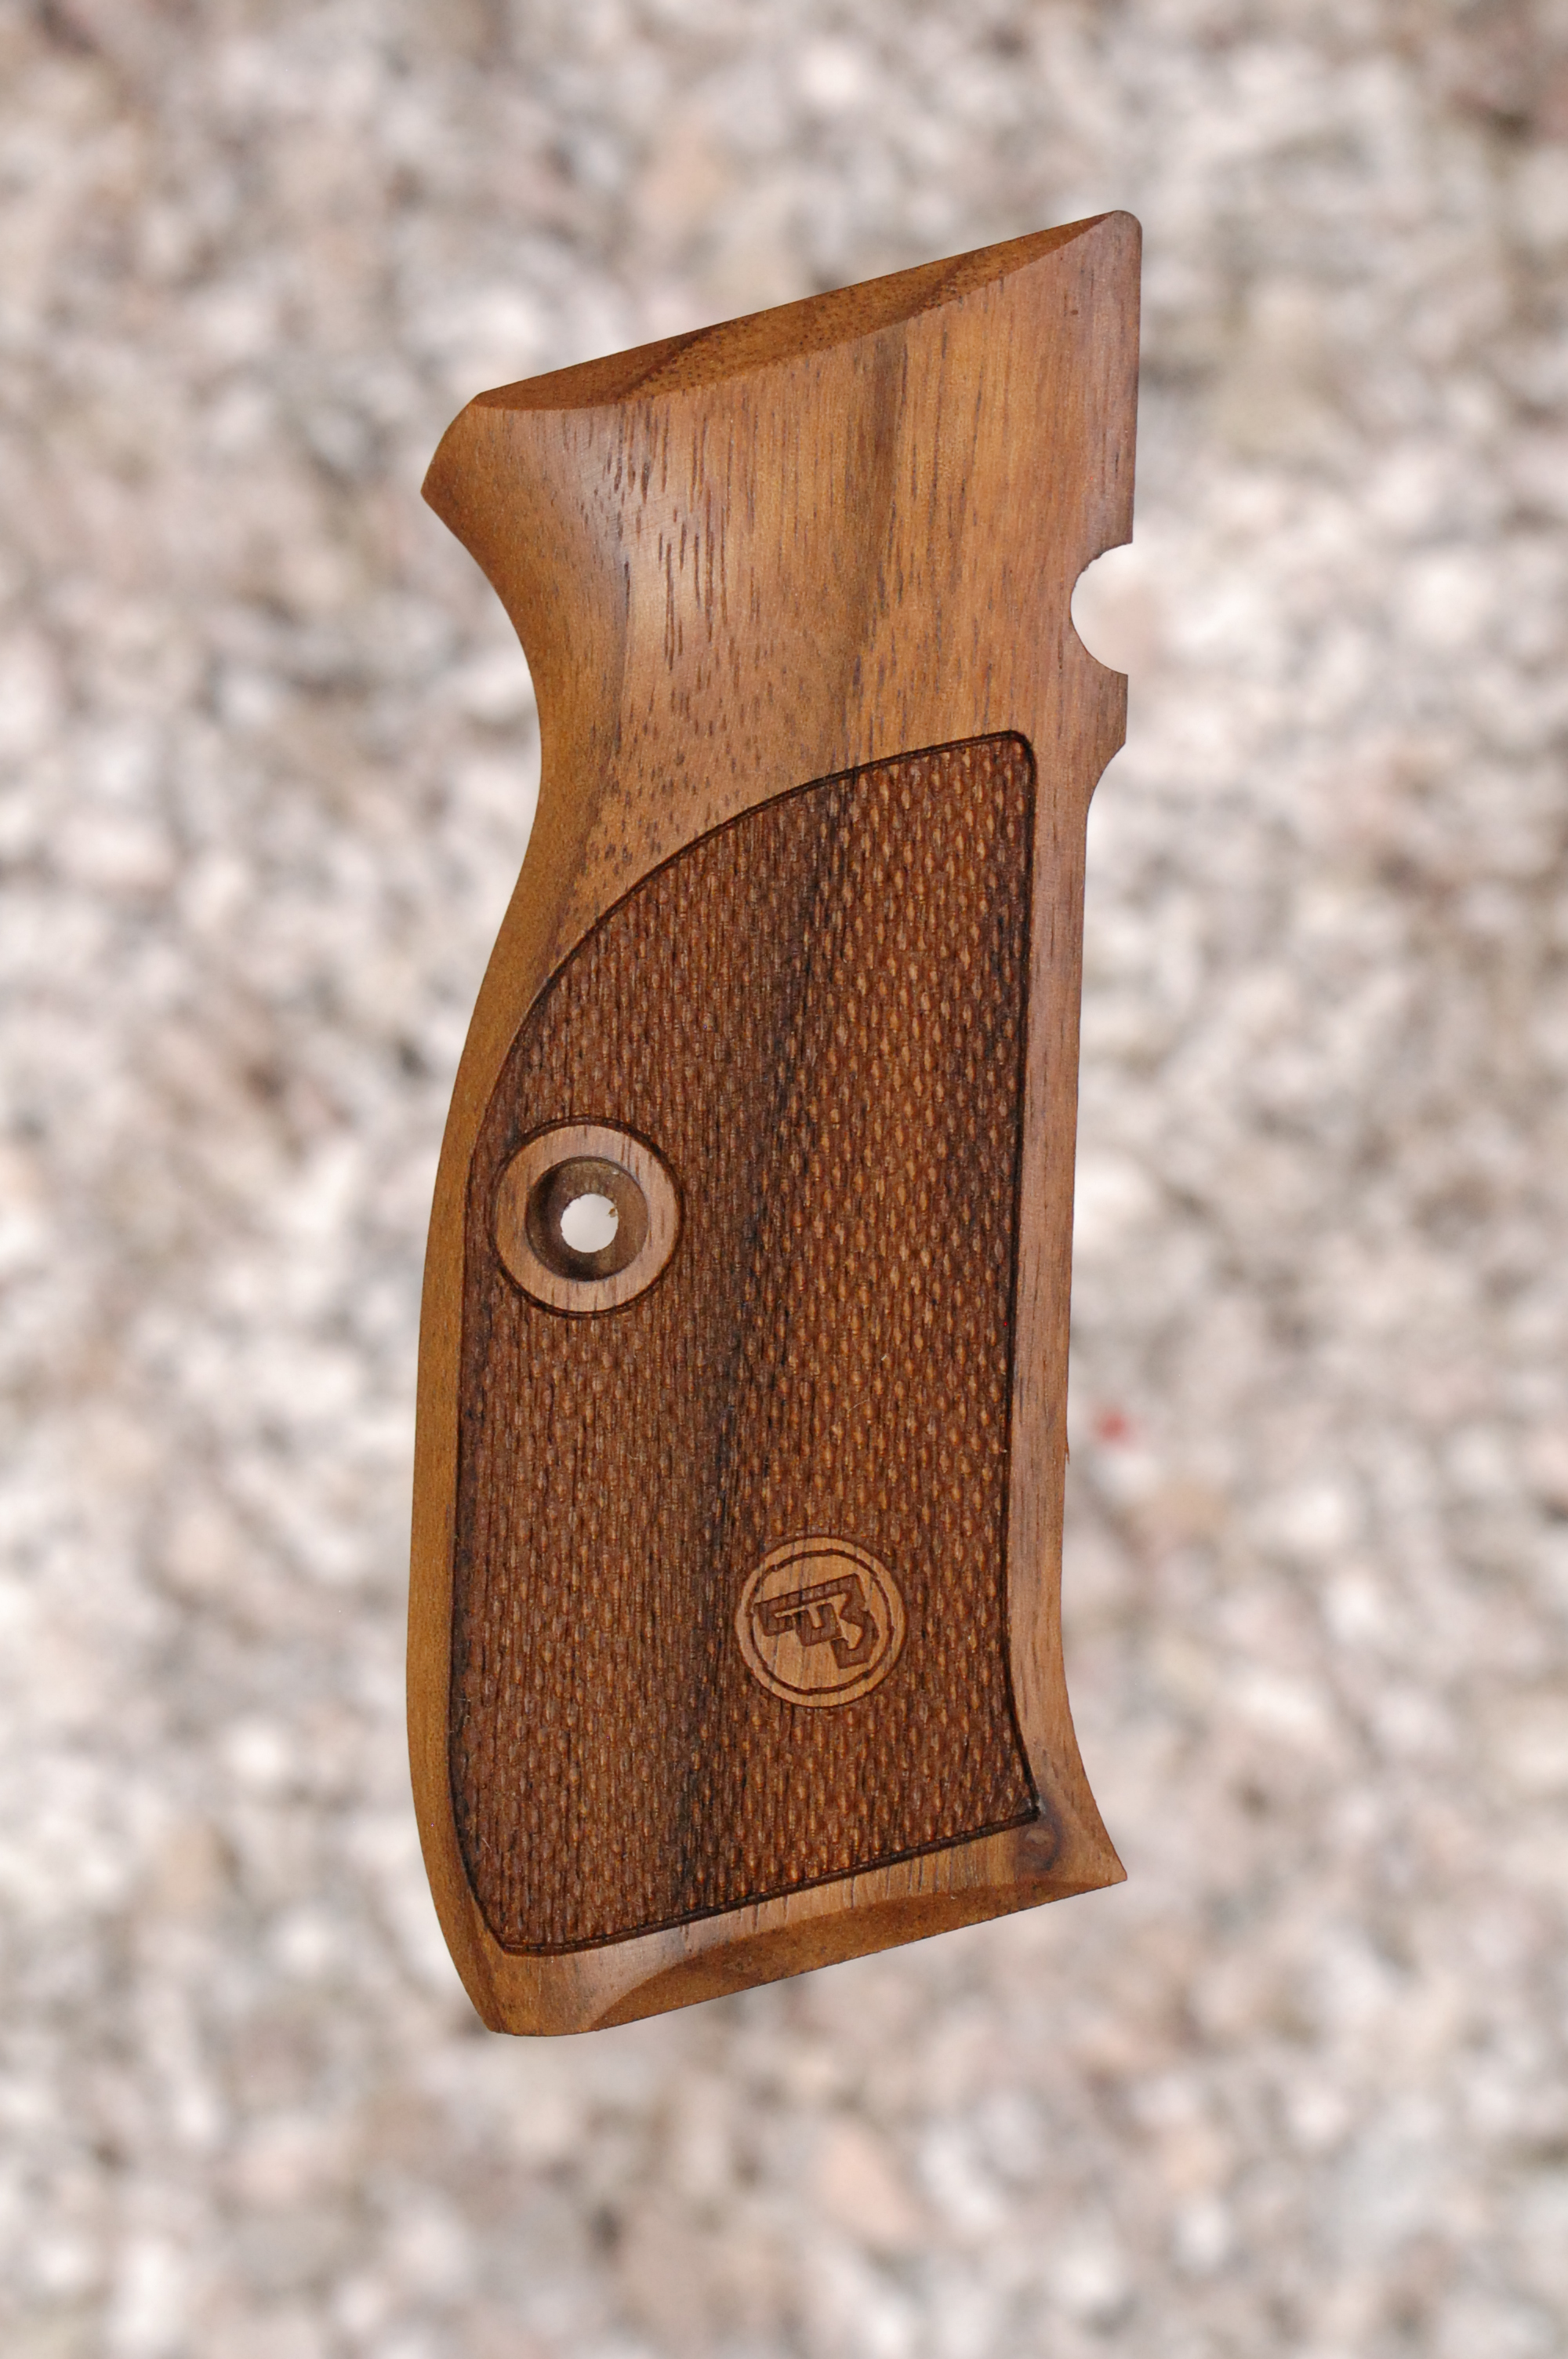 CZ-75 CZ-85  Grip set-Grips-grips set turkish walnut wood hand made Ful size 